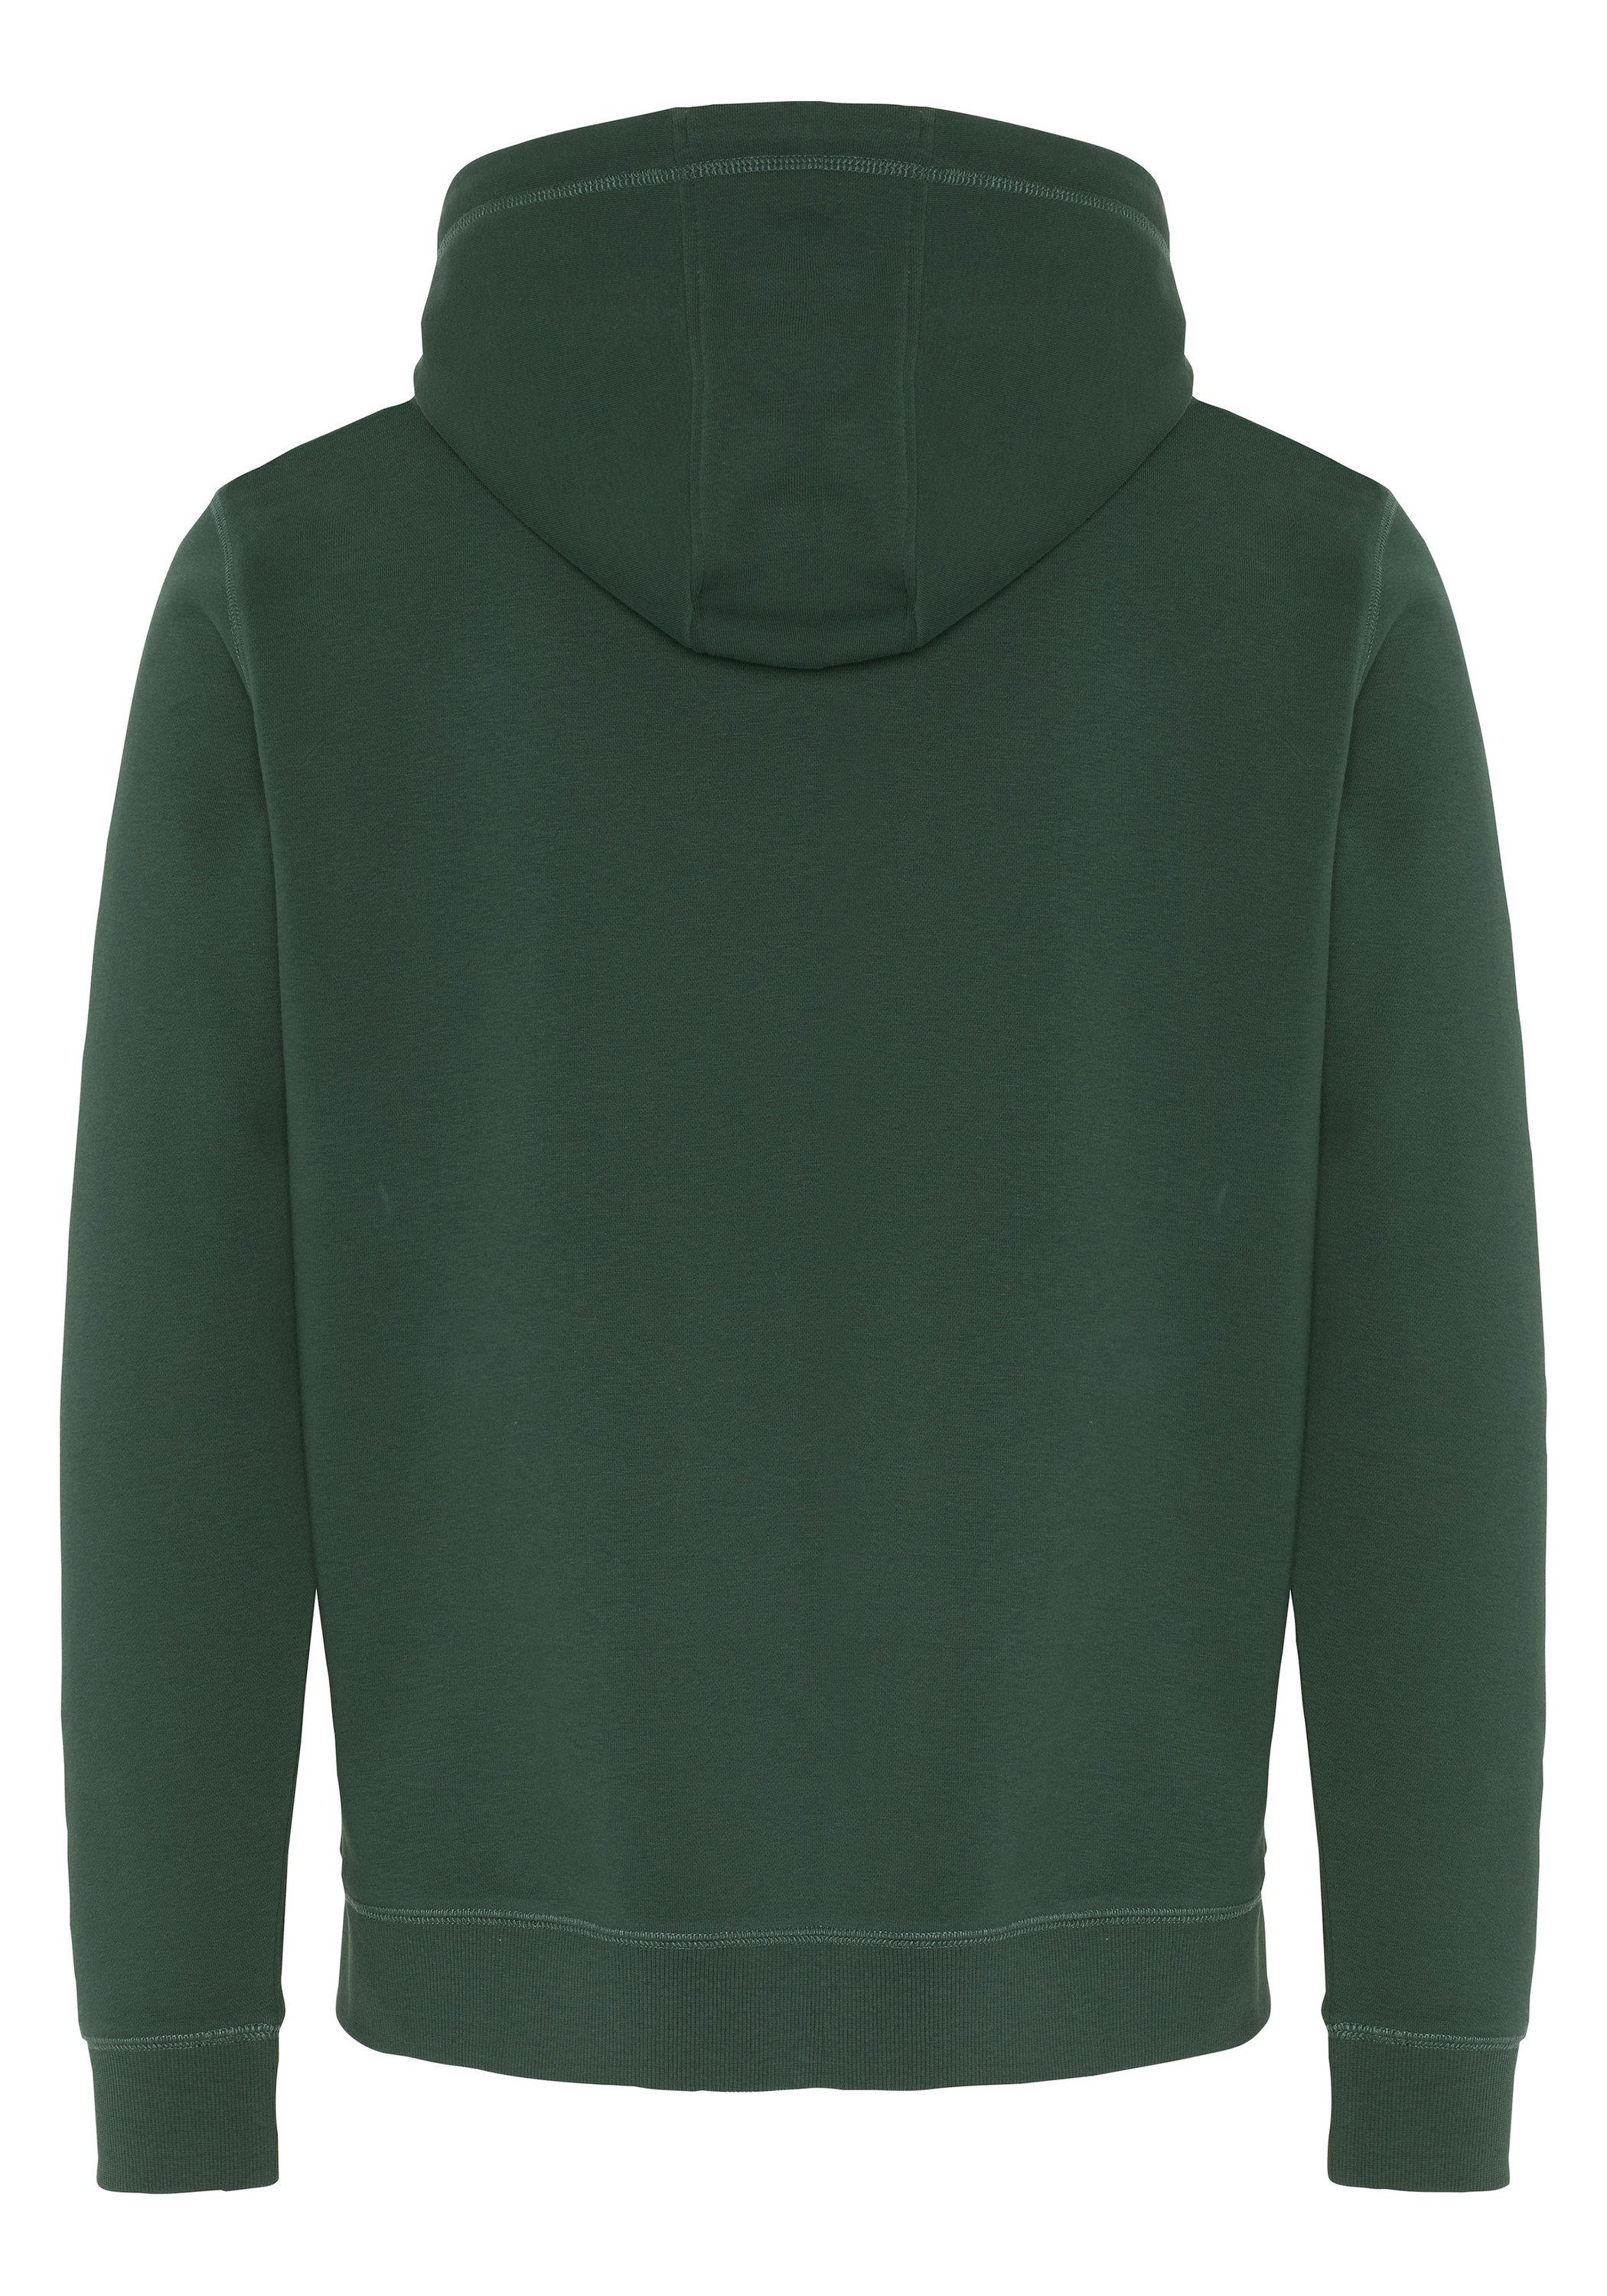 Chiemsee Kapuzensweatshirt Hoodie aus mit Baumwollmix respect-Print 1 grün dunkel